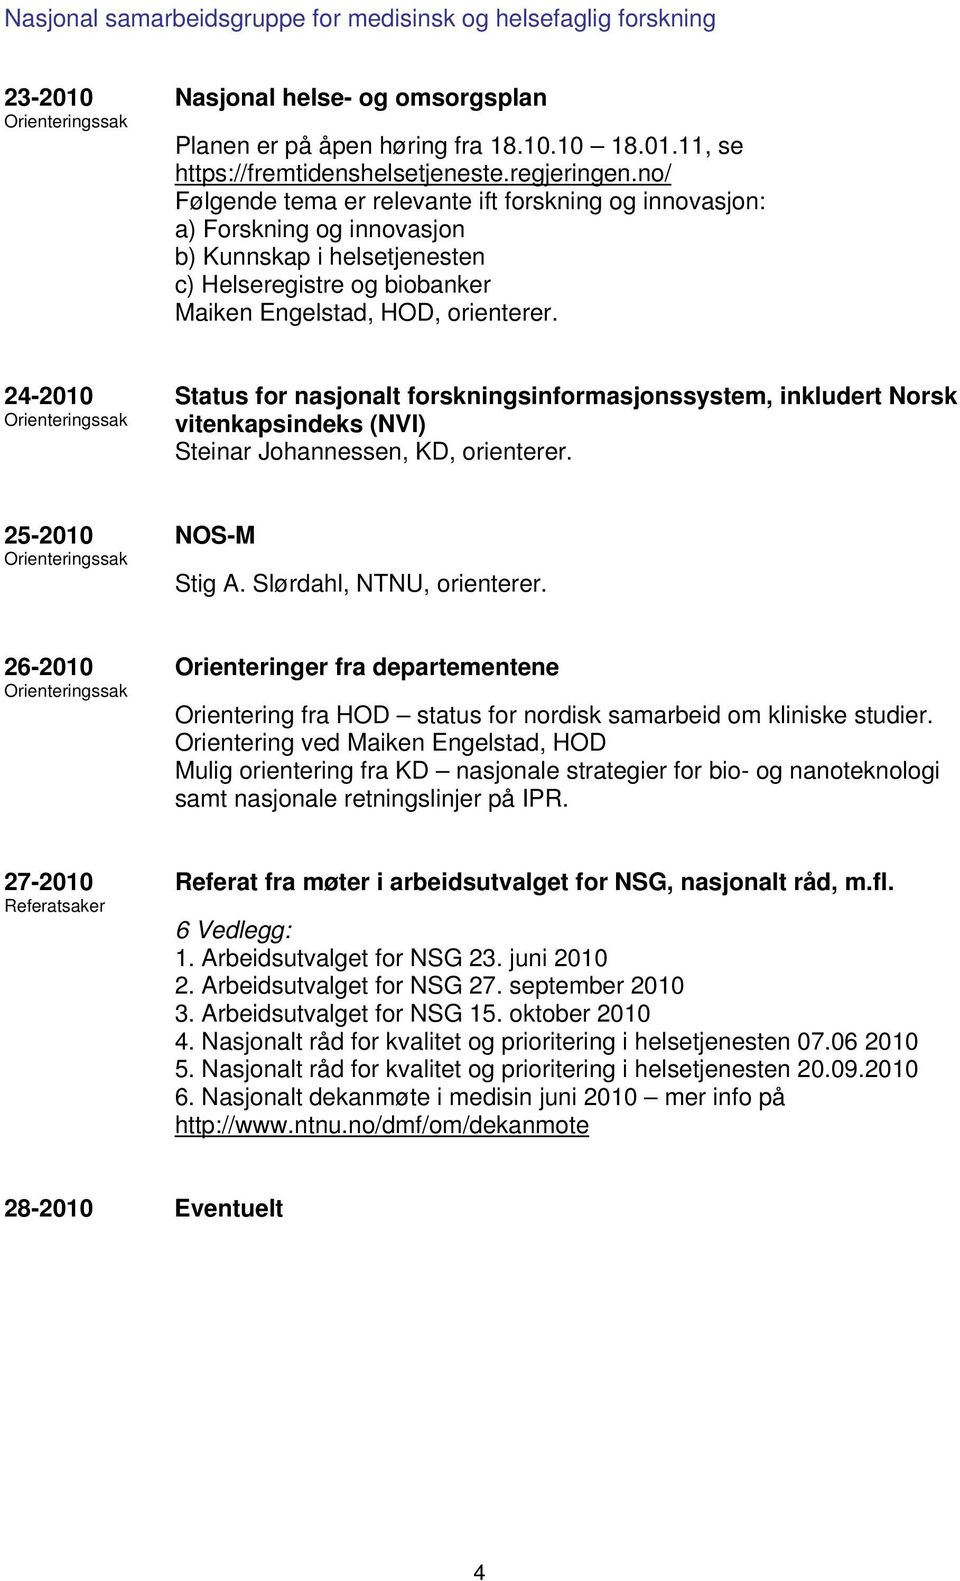 24-2010 Orienteringssak Status for nasjonalt forskningsinformasjonssystem, inkludert Norsk vitenkapsindeks (NVI) Steinar Johannessen, KD, orienterer. 25-2010 Orienteringssak NOS-M Stig A.